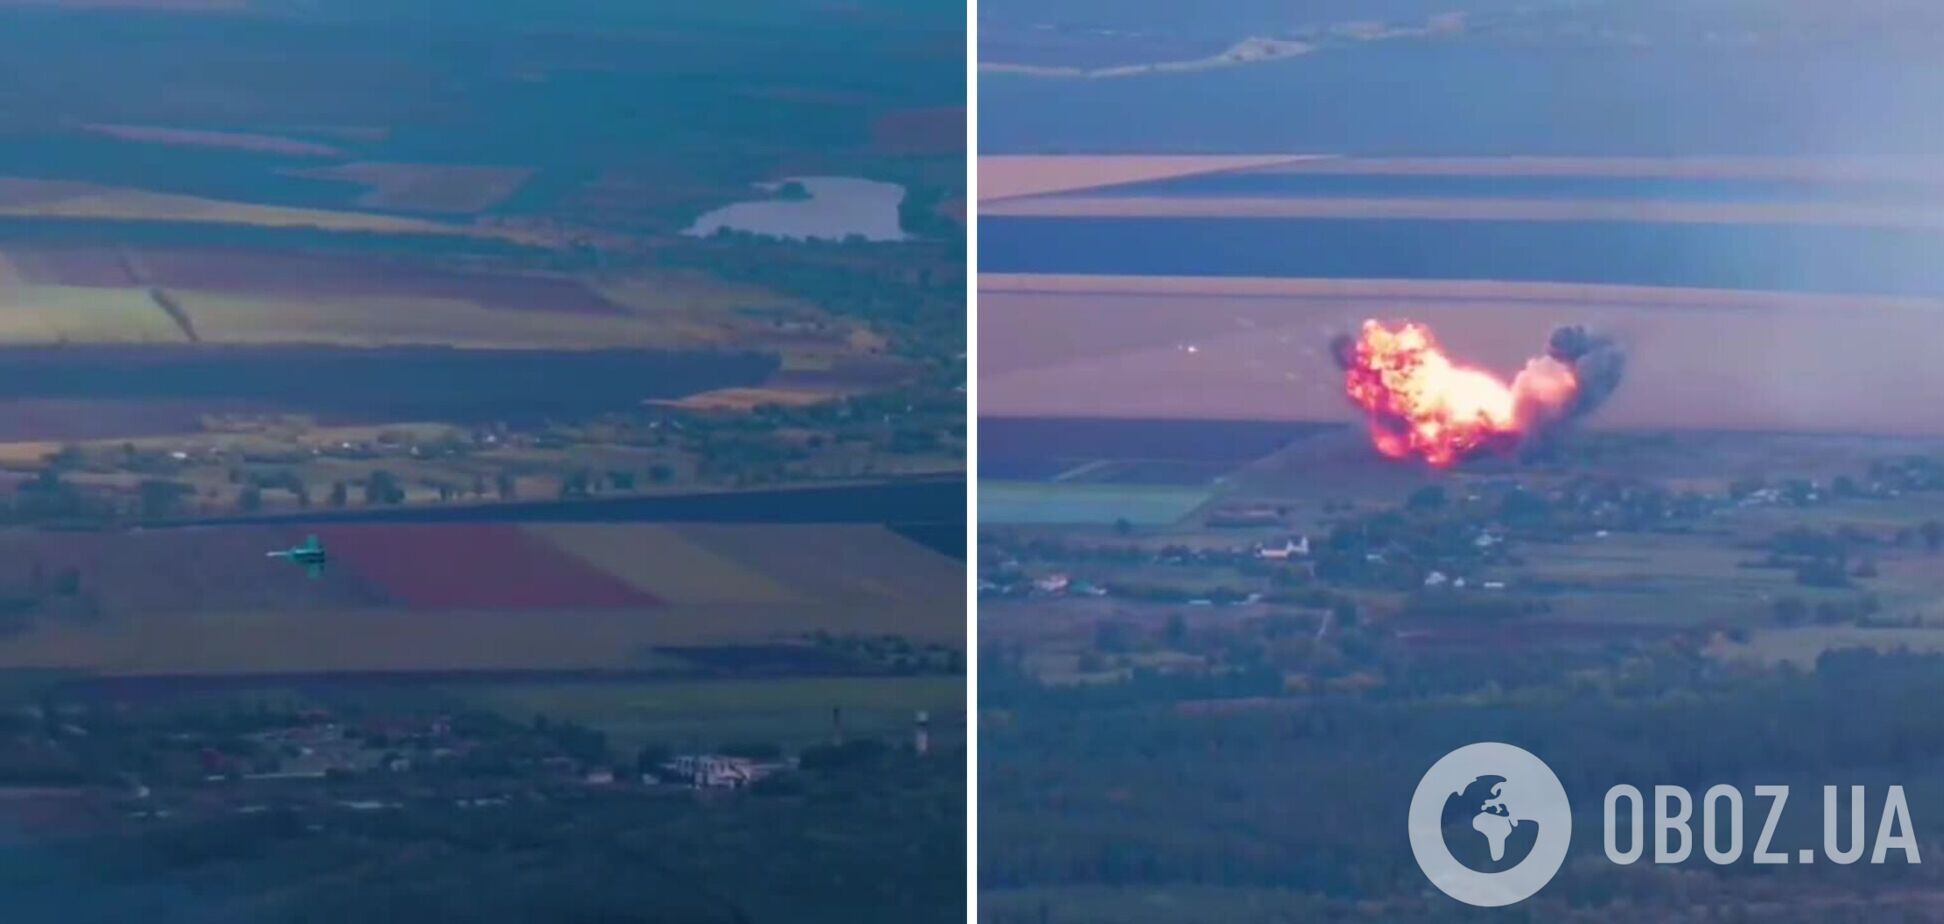 Украинские защитники сбили вражеский Су-34 во время контрнаступления на востоке: яркое видео